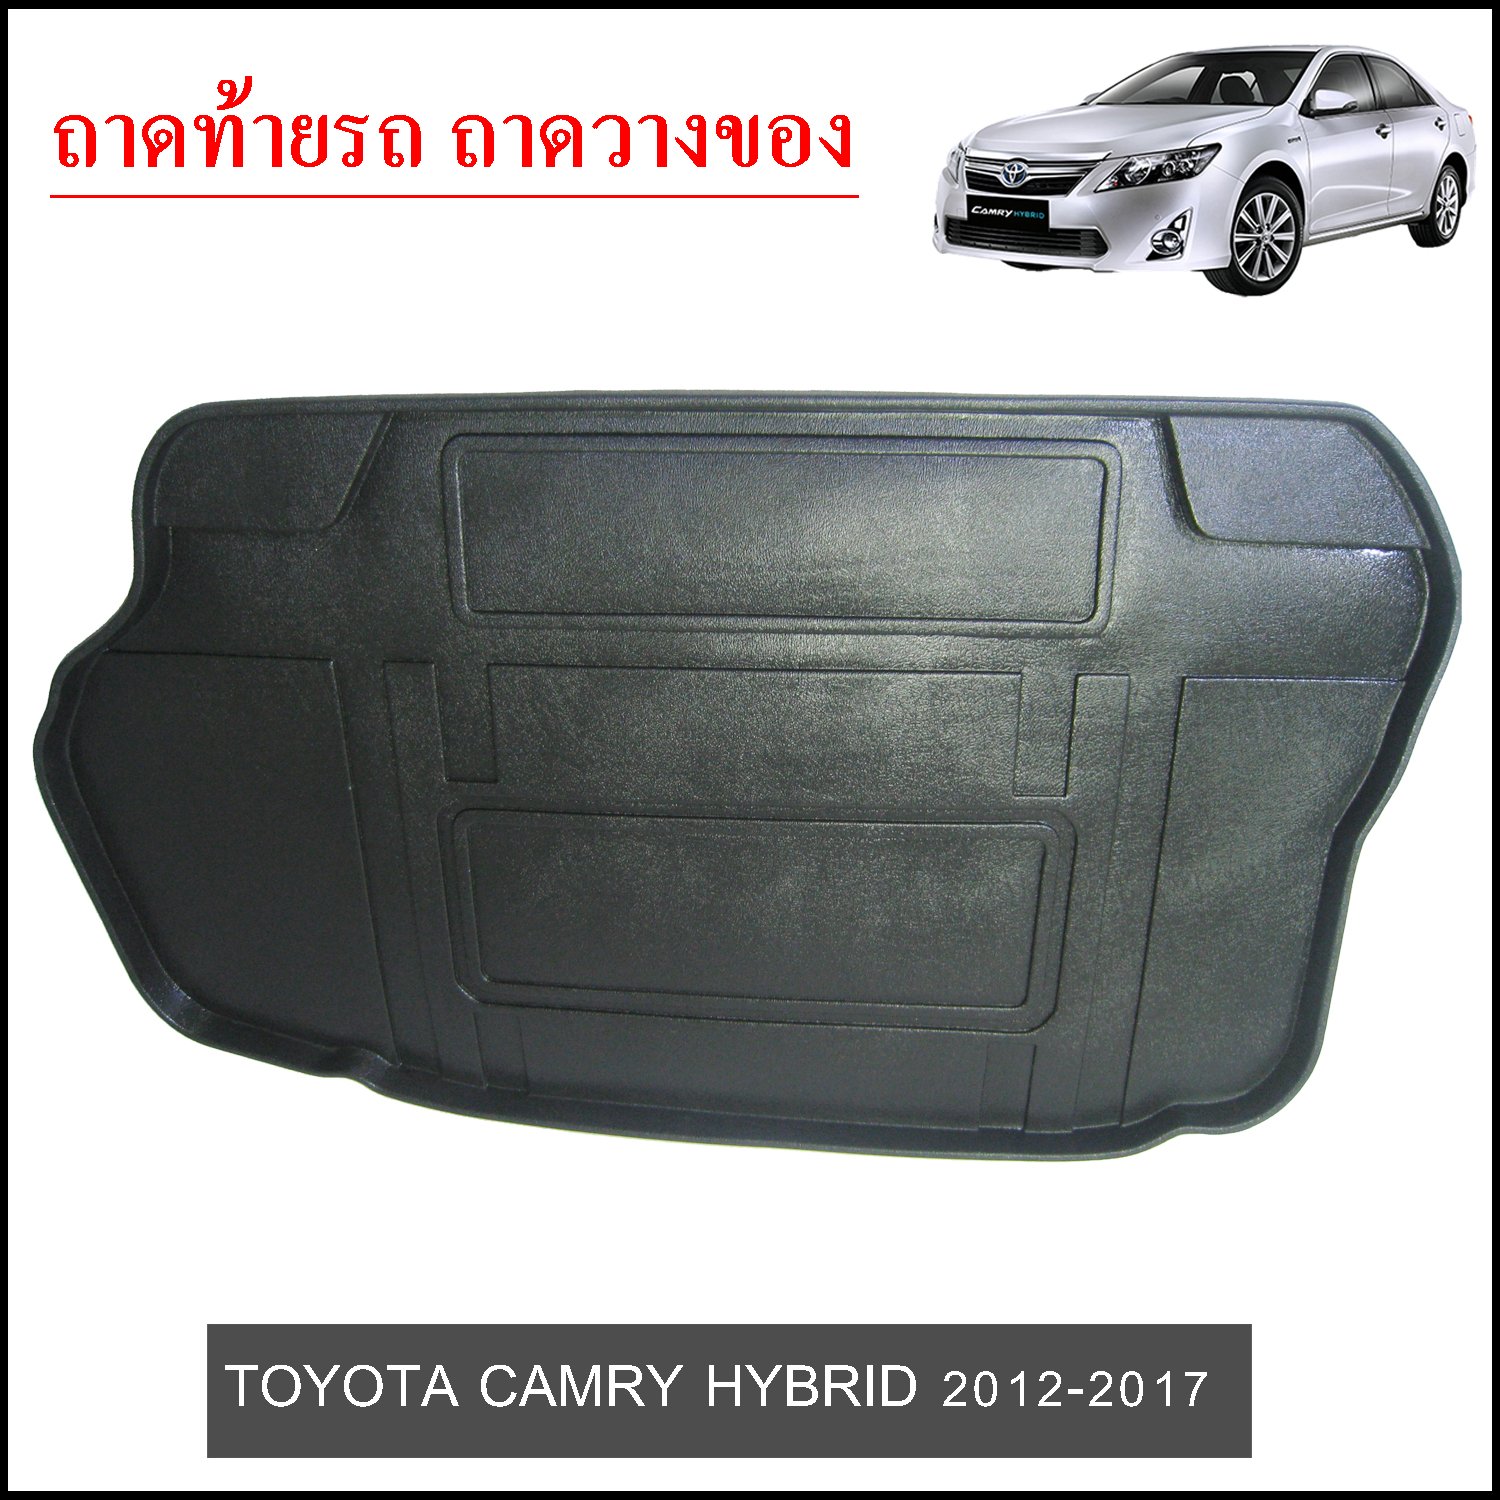 Toyota Camry 2012-2017 HYBRID